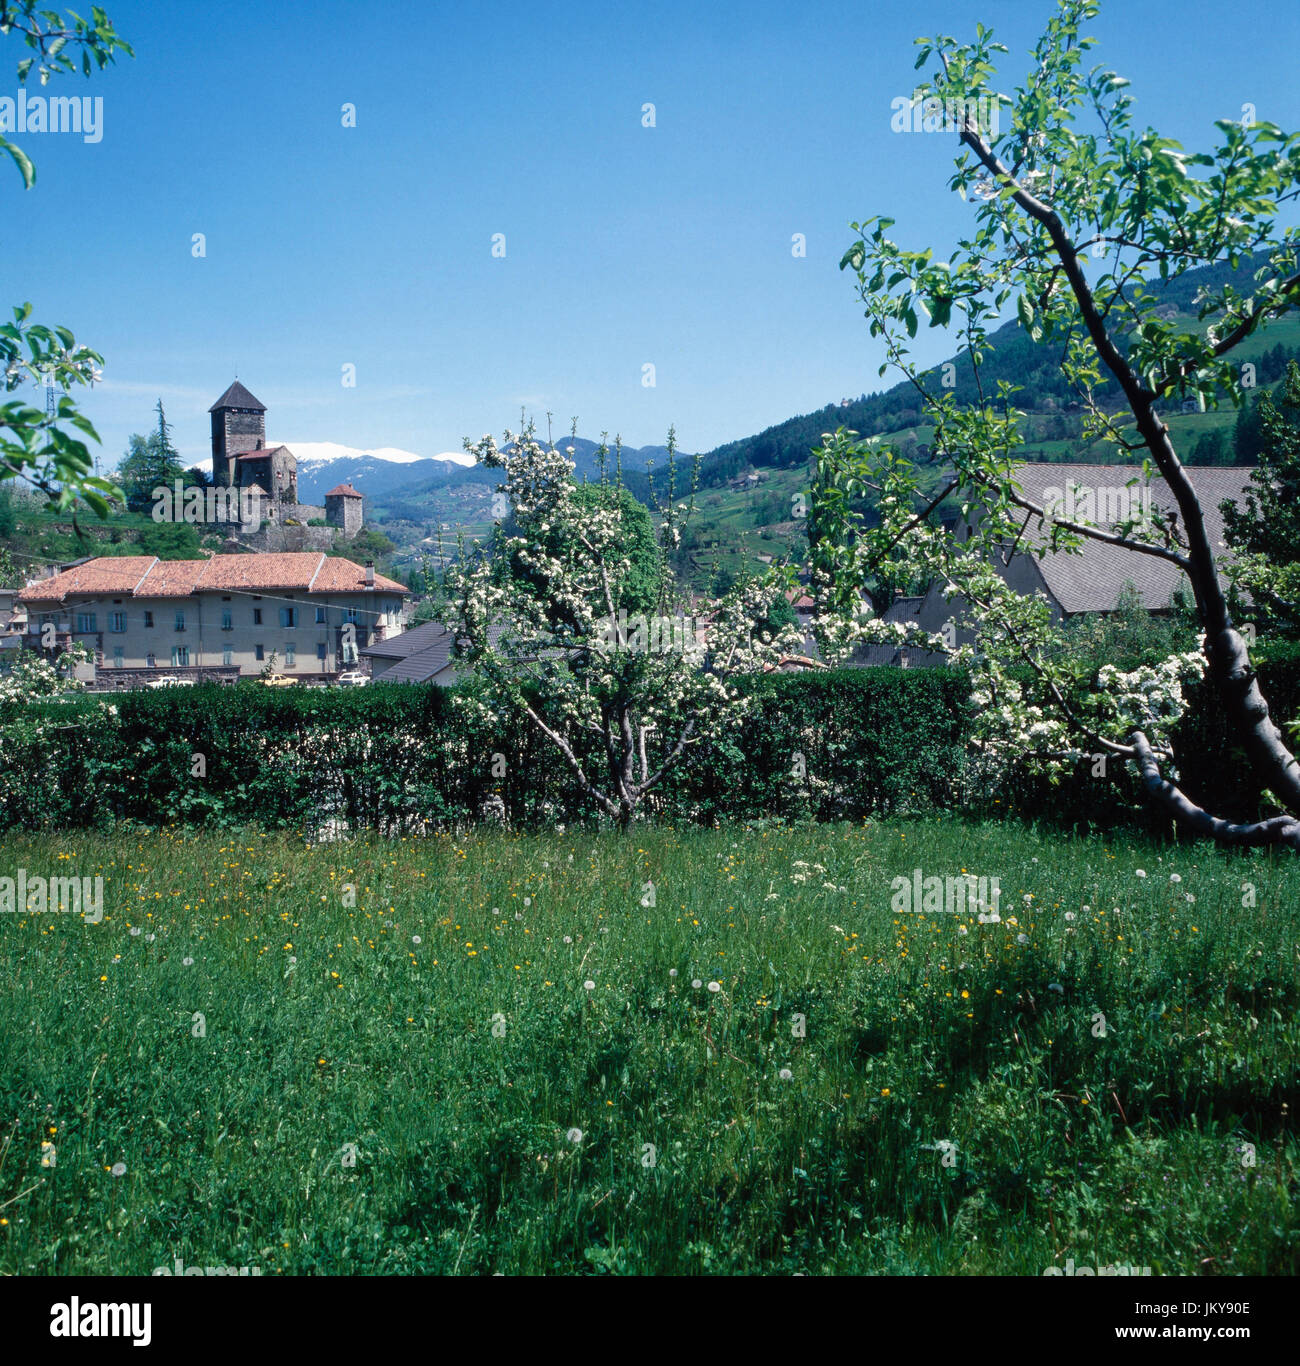 Blick auf die Burg Bronzolo Säbener am Berg oberhalb von Klausen in Südtirol, Italien 1980er Jahre. Vista di Bronzolo castello a Saebener Berg montagna sopra Klausen in Alto Adige, Italia degli anni ottanta. Foto Stock